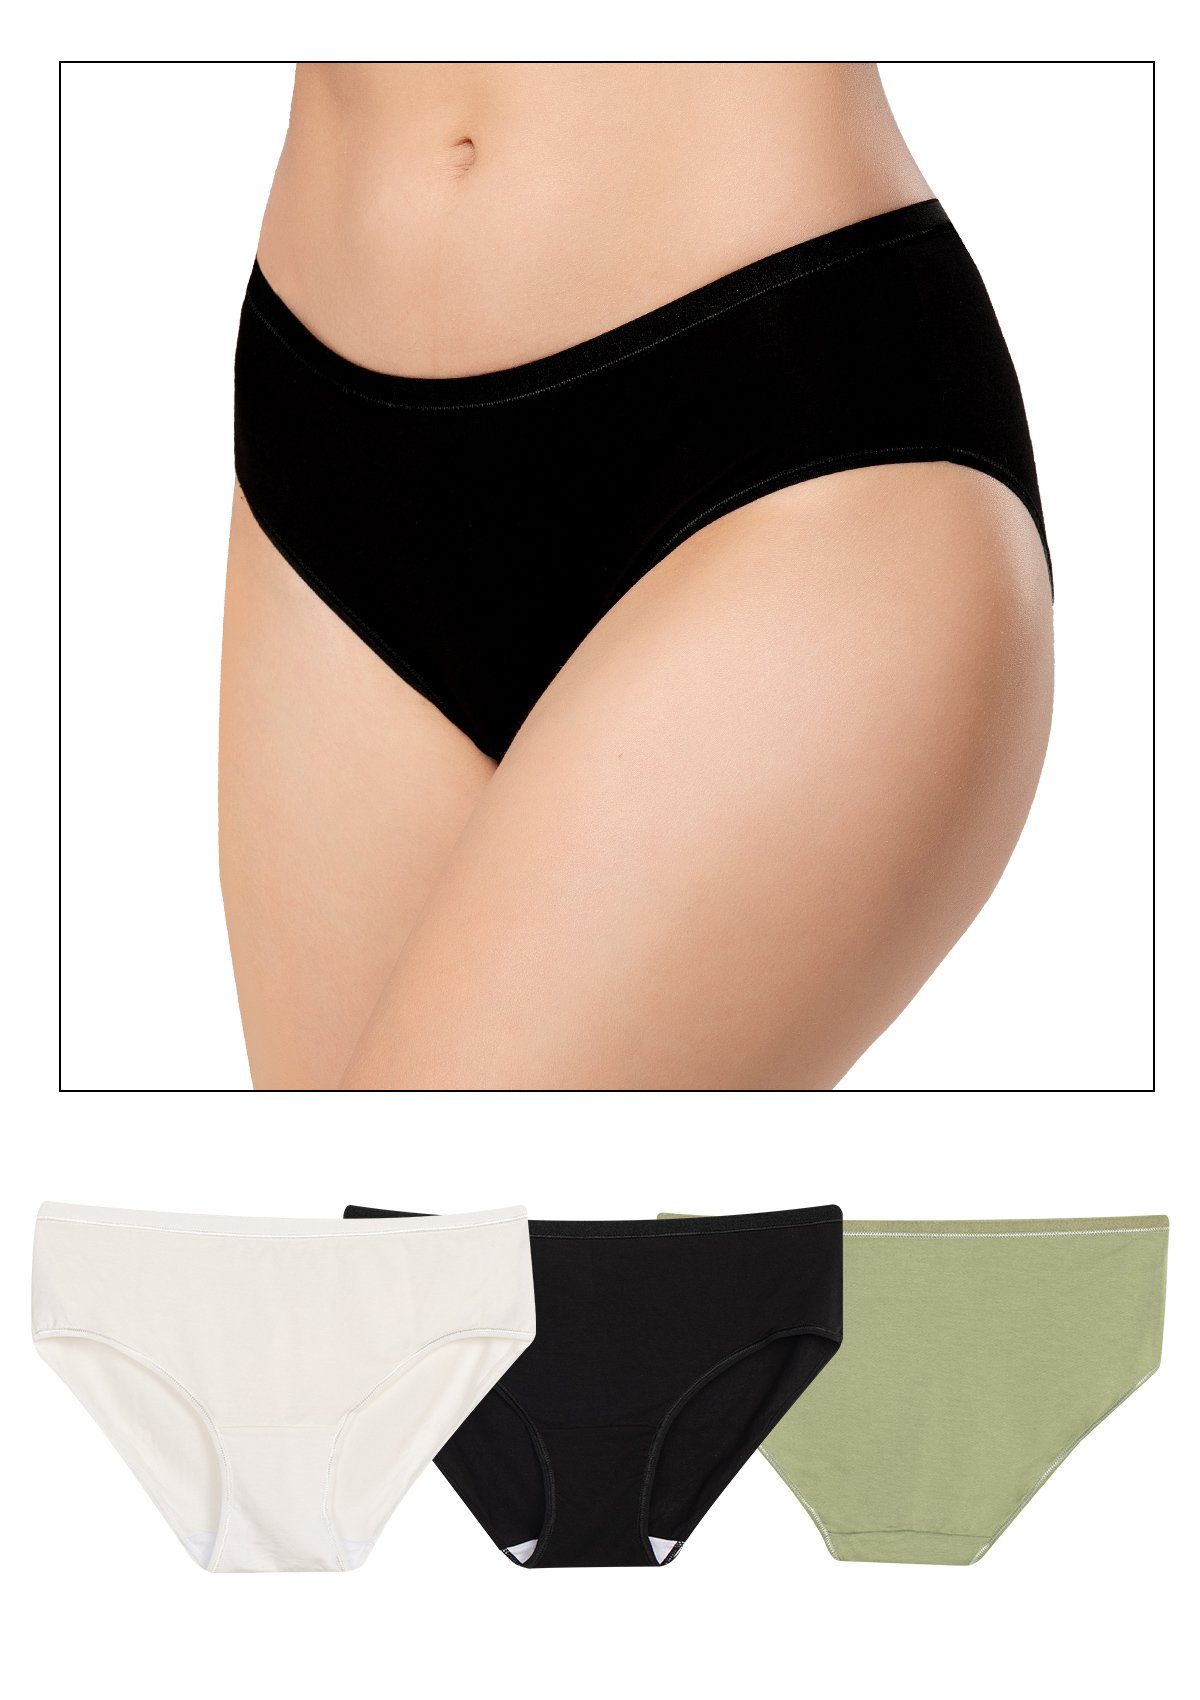 Yvette Jazz-Pants Slips Damen Unterwäsche (3 Stück) mittele Taille Panty  Slip, S185044A06 online kaufen | OTTO